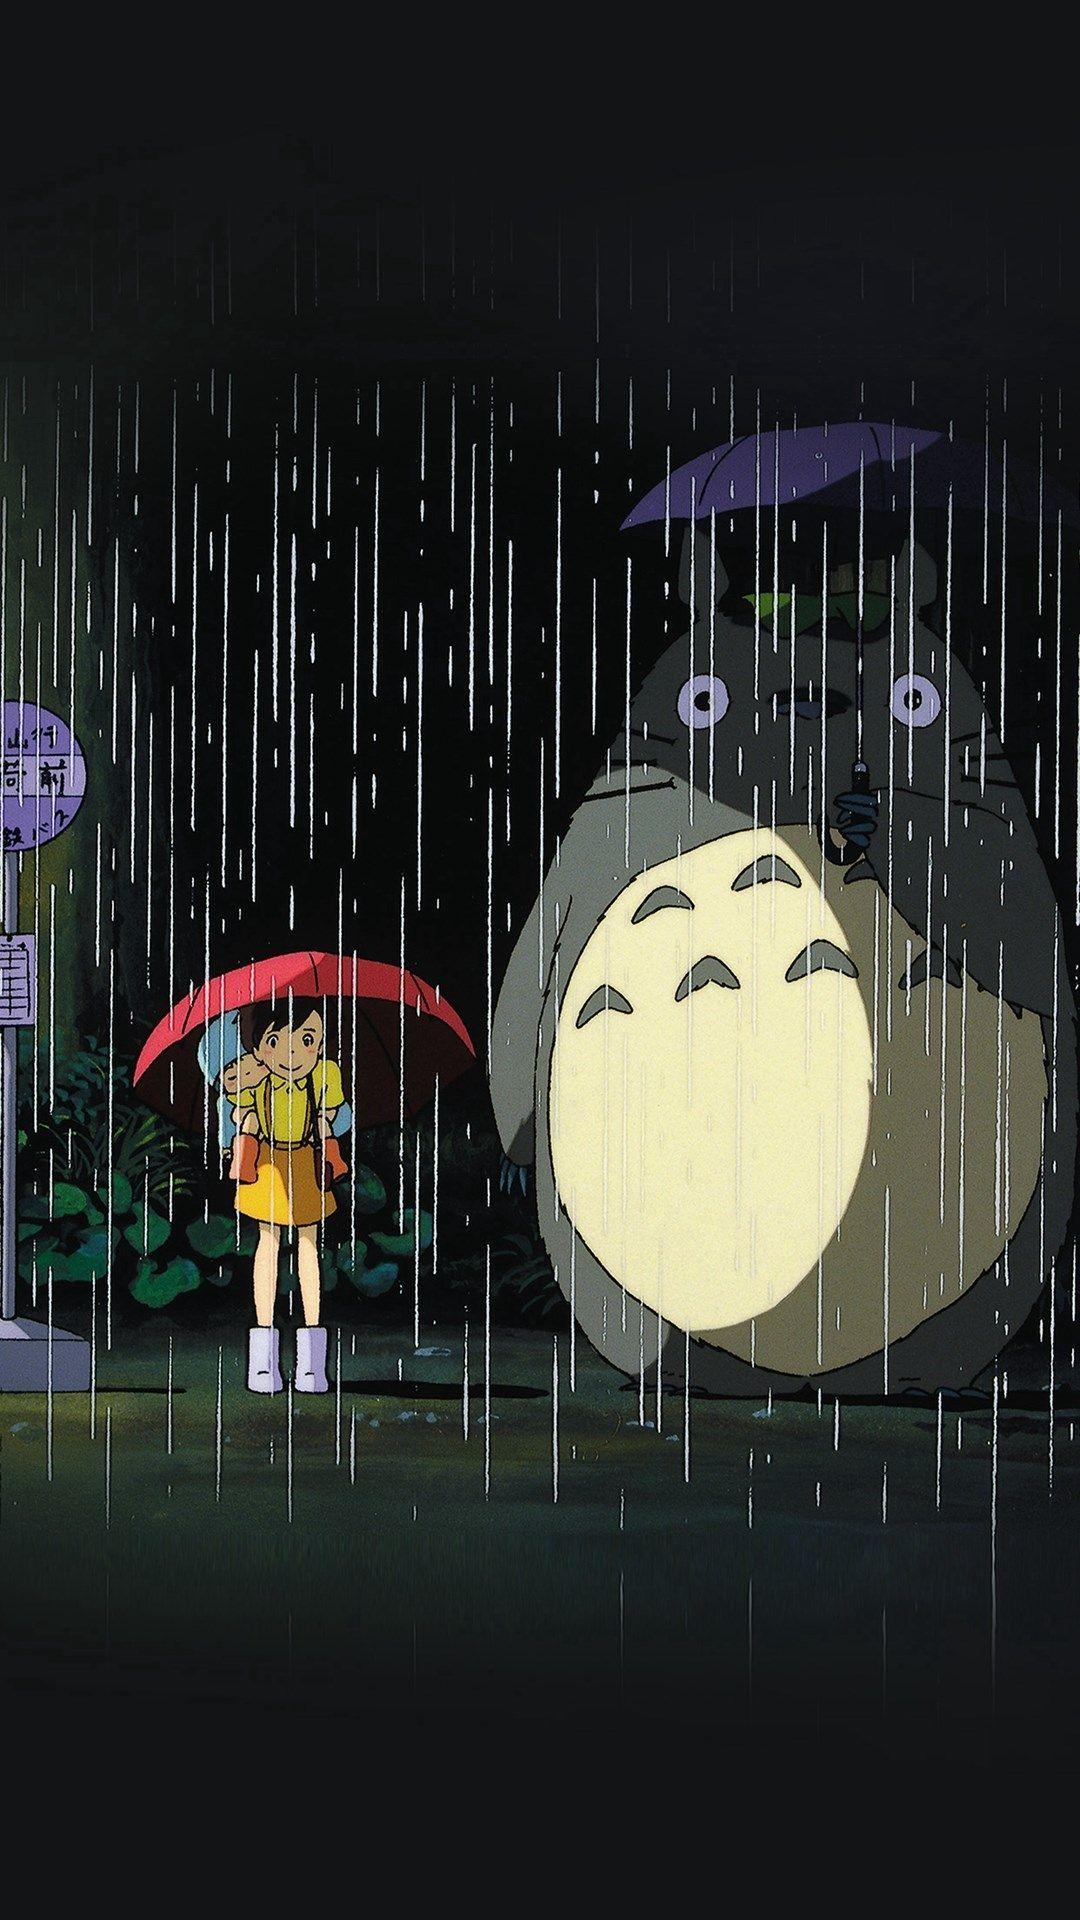 1080x1920 my hàng xóm totoro art minh họa mưa anime iphone 6 plus hình nền